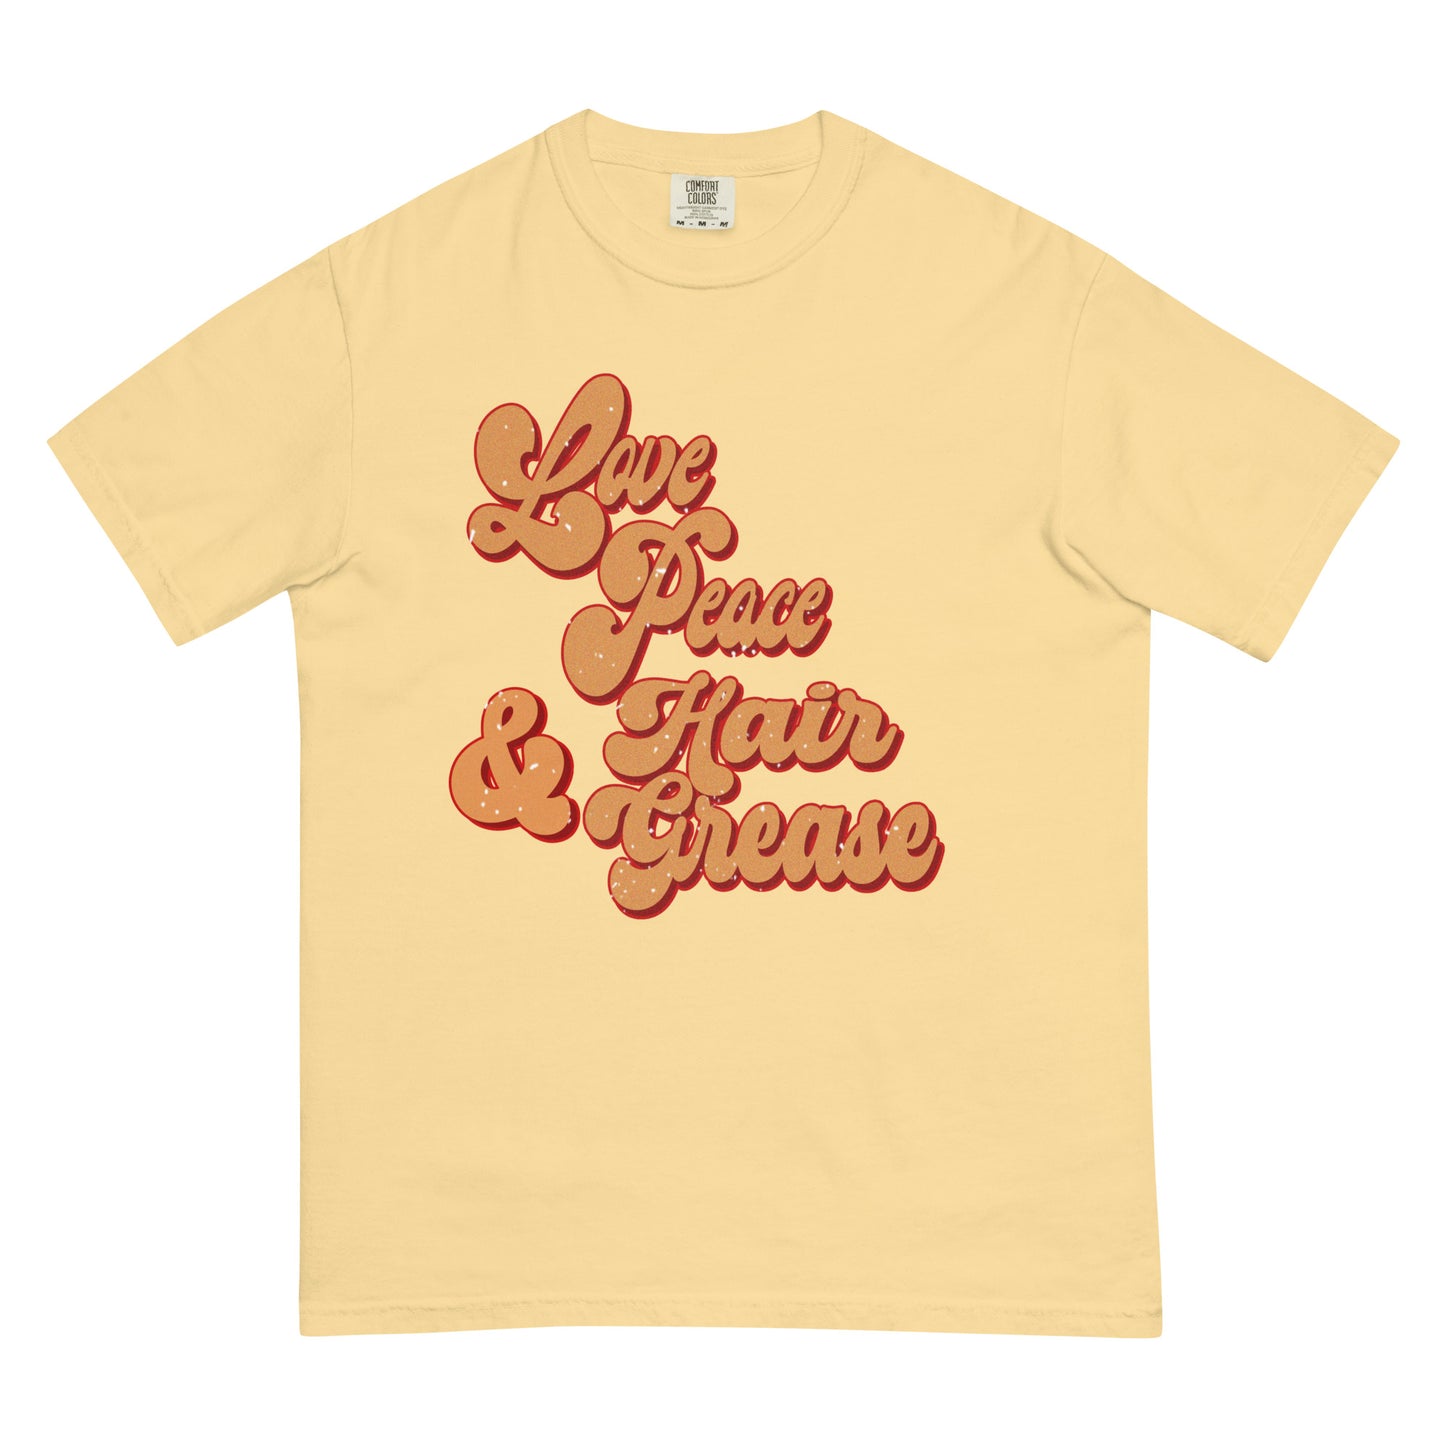 Love, Peace, & Hair Grease heavyweight t-shirt